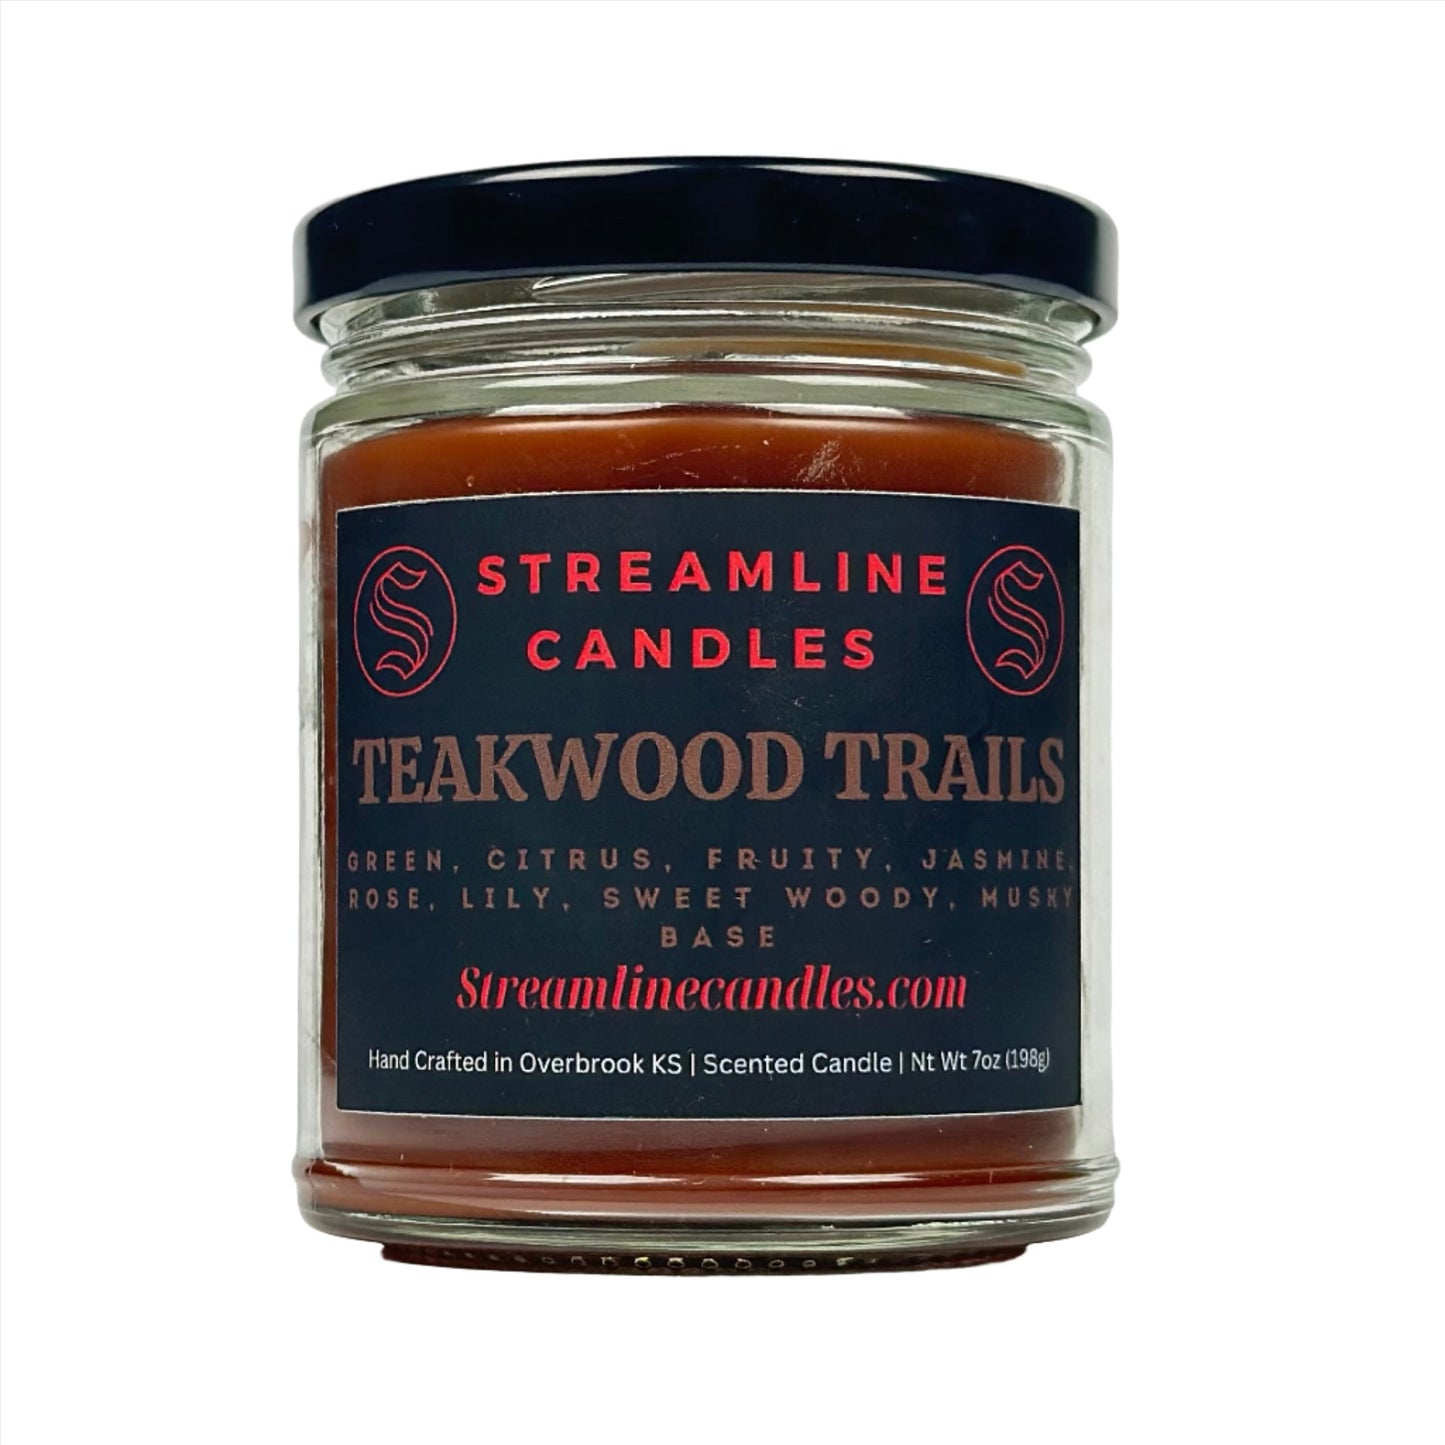 Teakwood trails | 7oz Candle